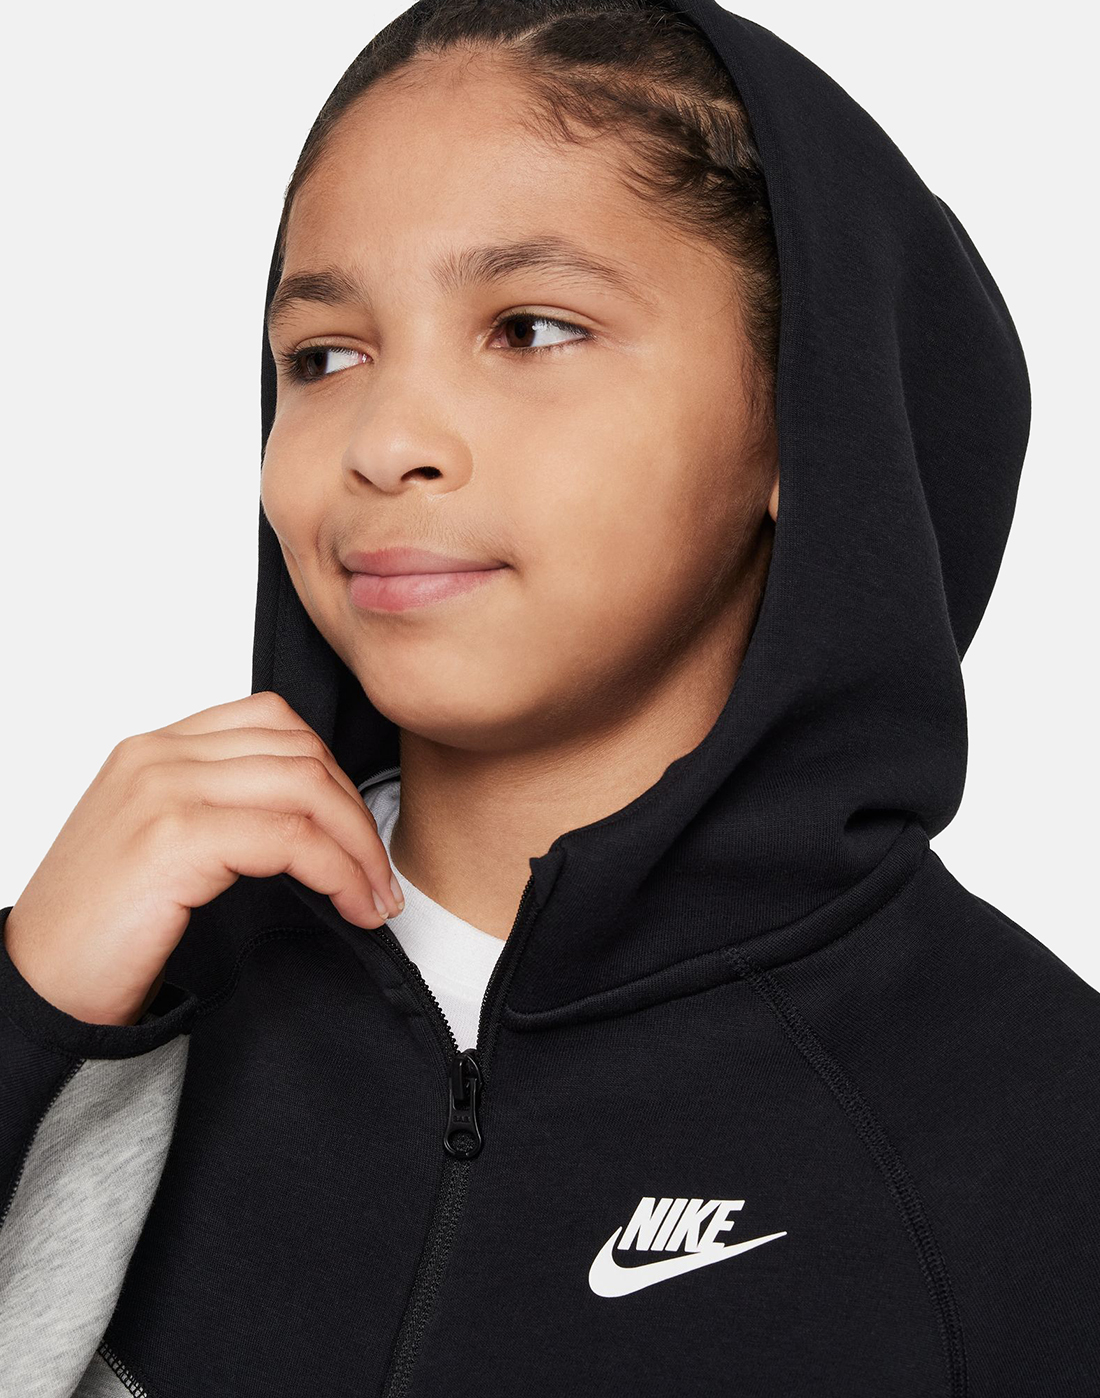 Nike Older Boys Tech Fleece Hoodie - Grey | Life Style Sports IE